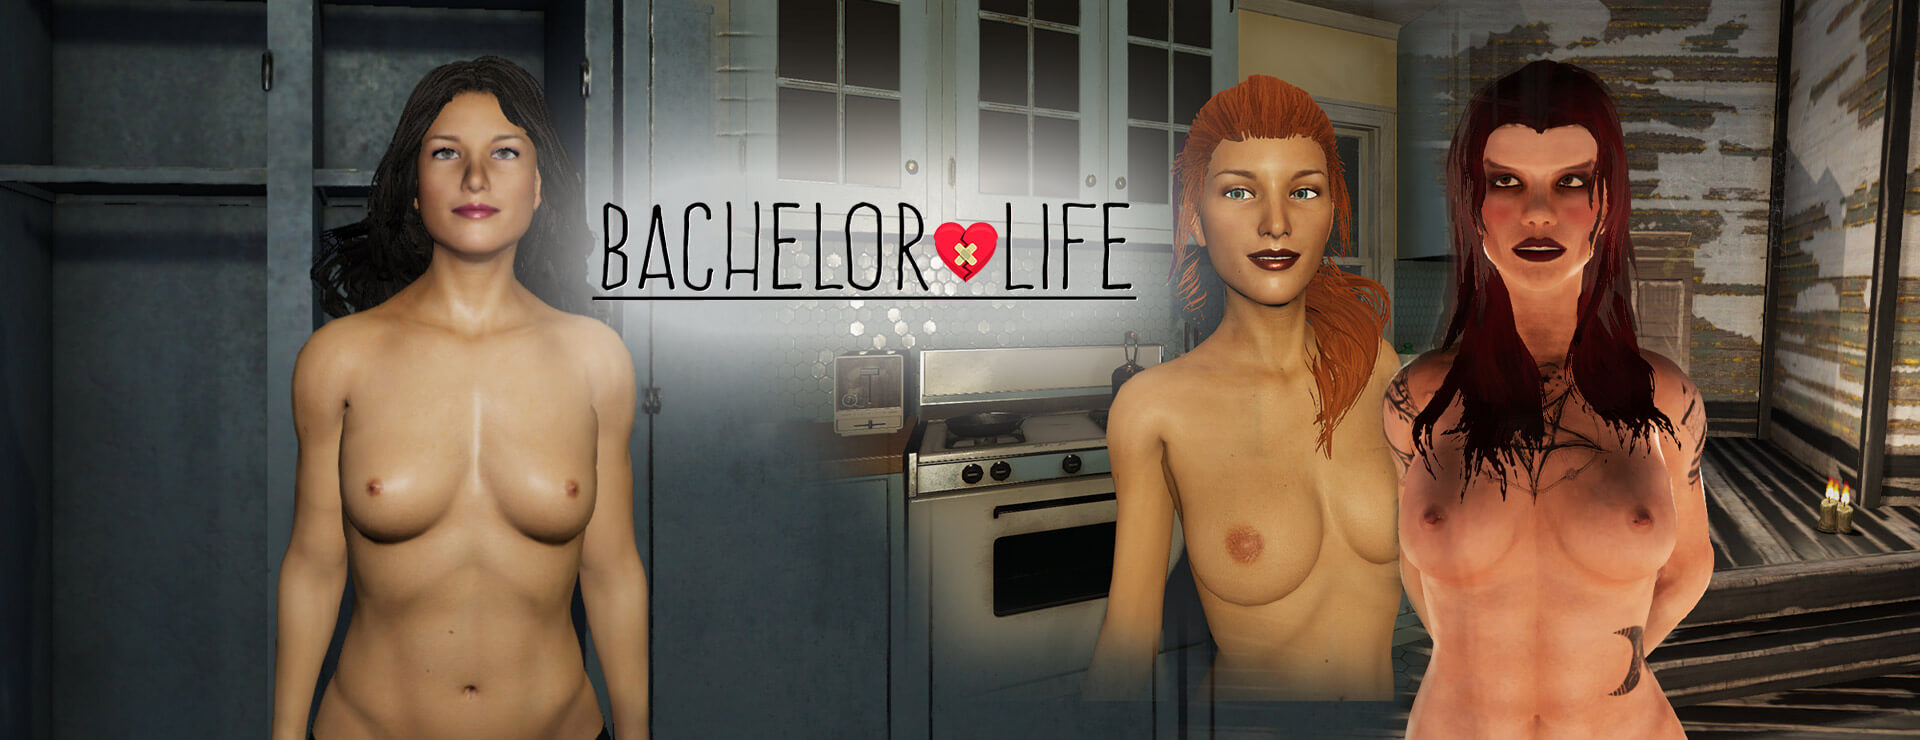 Bachelor Life - Simulation Game